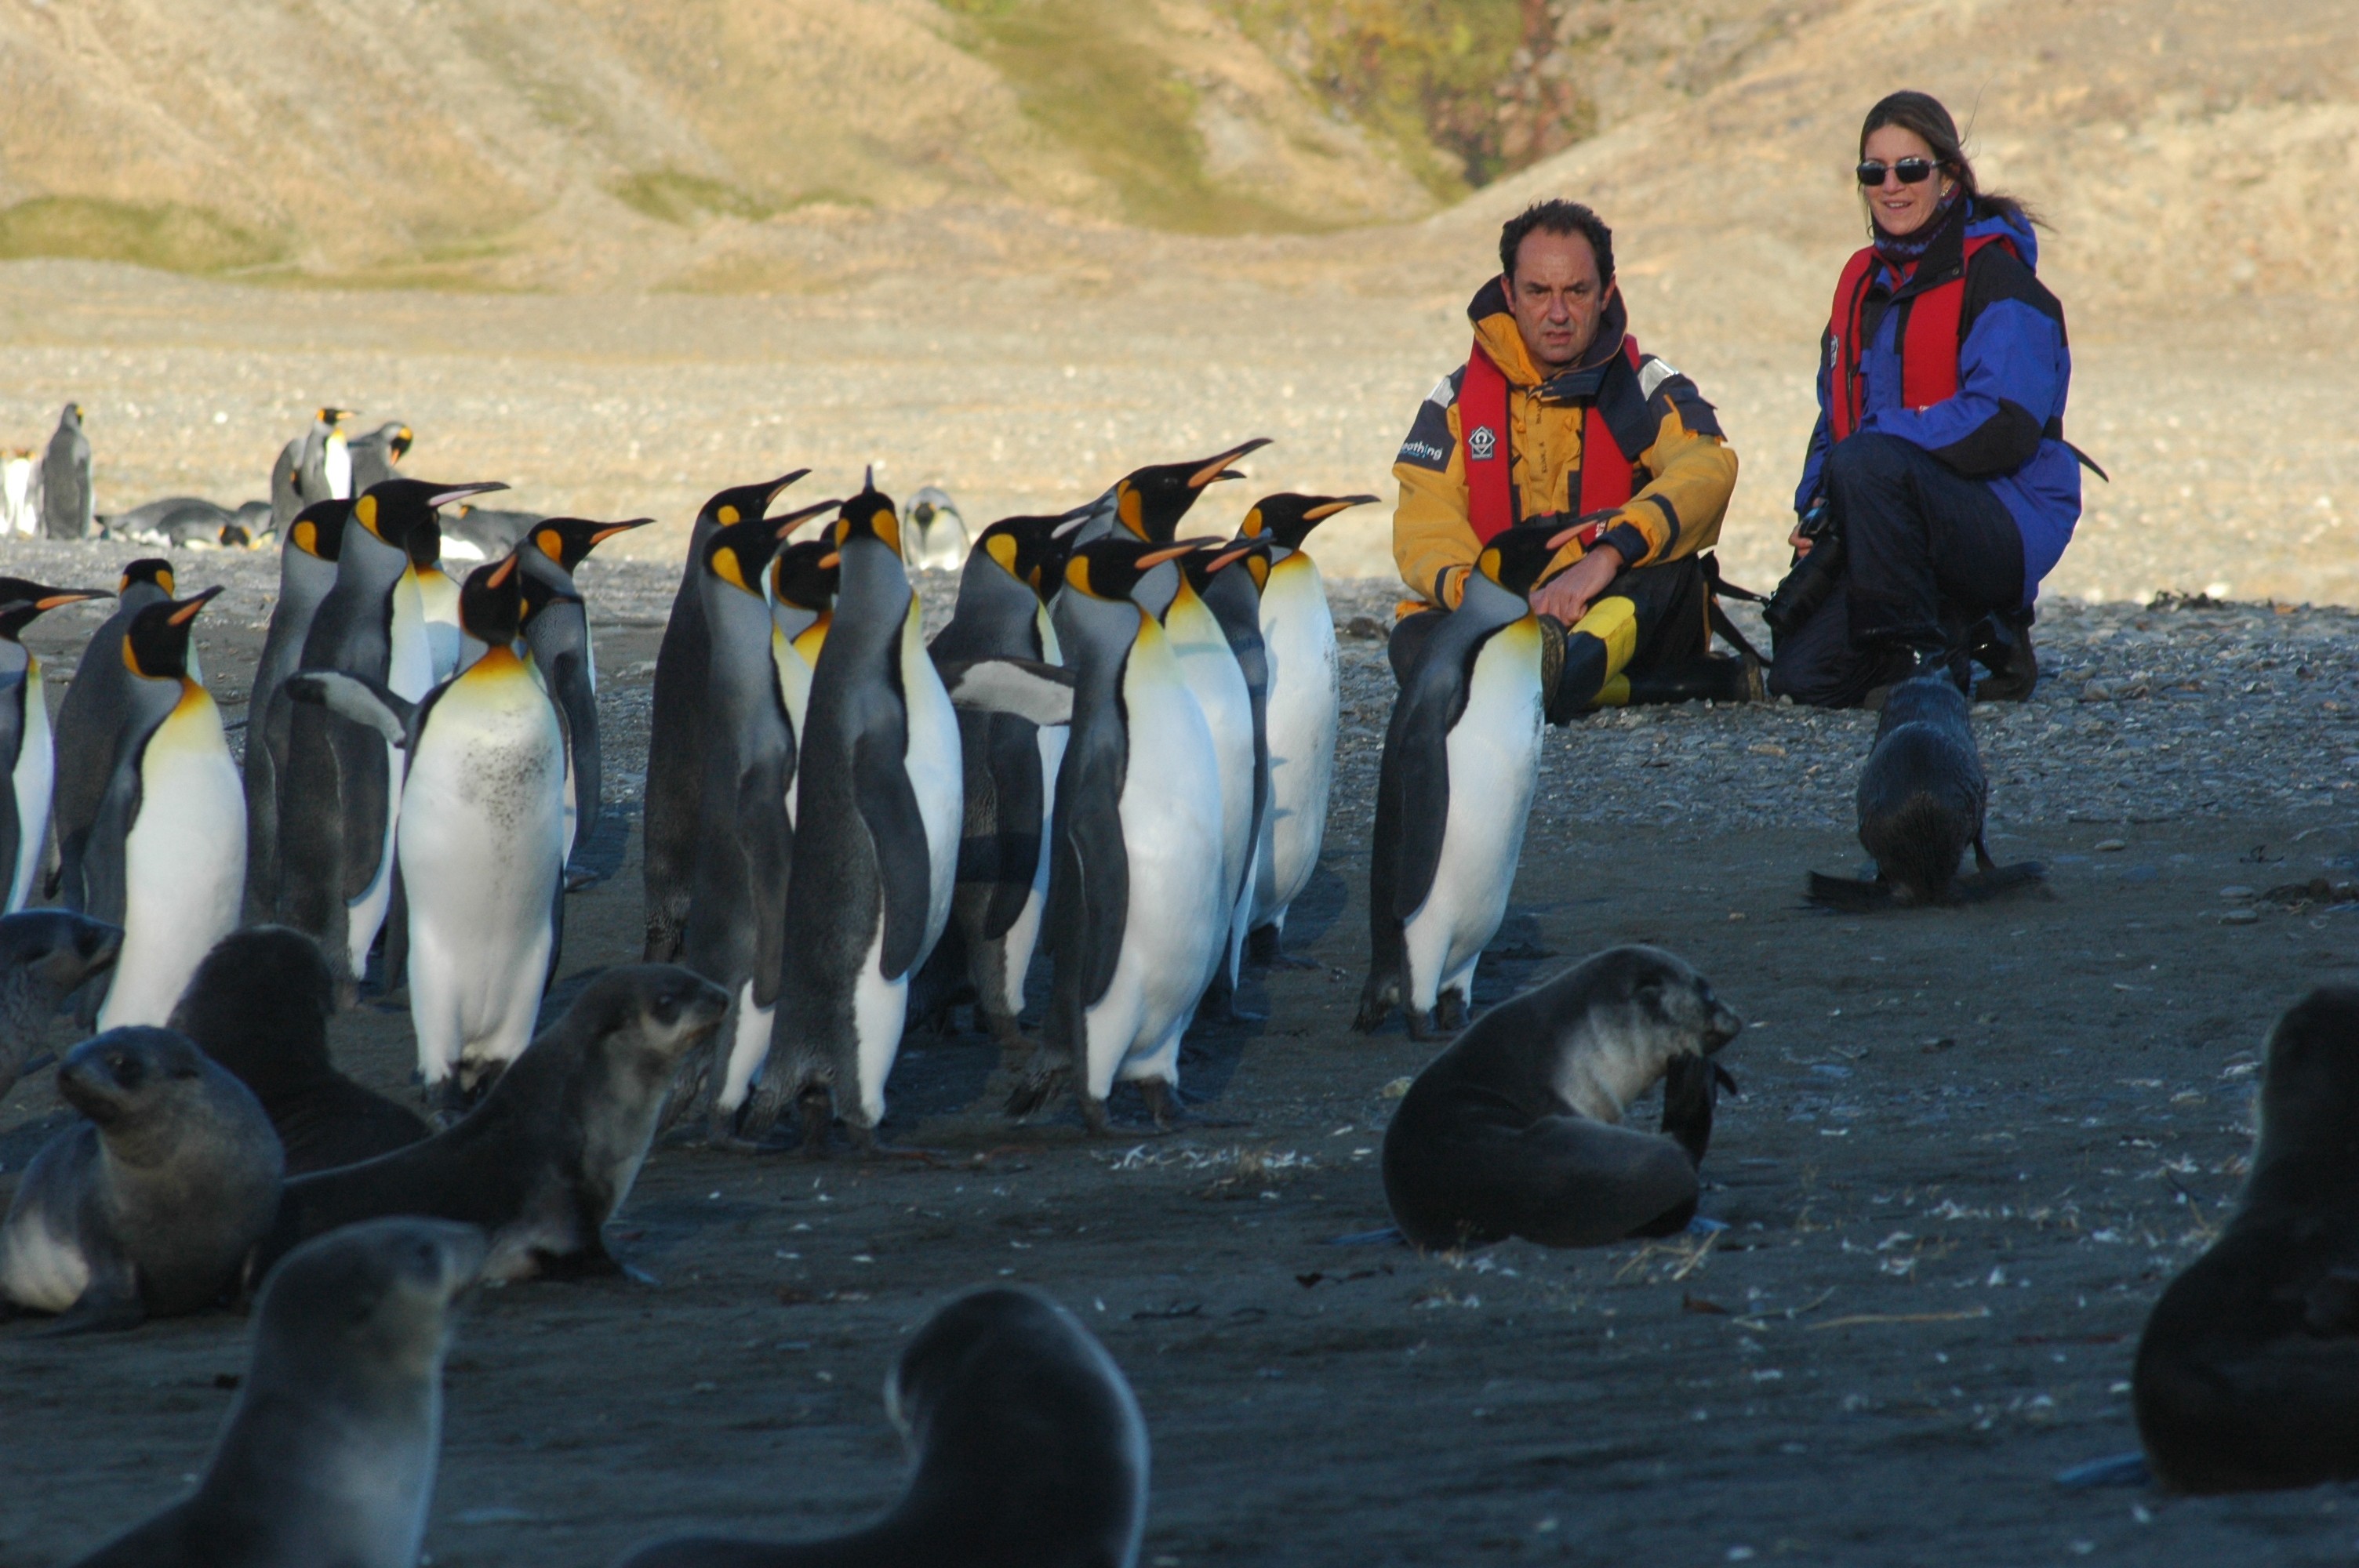 Amyr e sua esposa Marina Bandeira observam pinguins e leões-marinhos - a exuberante vida selvagem está por toda parte na Antártida (Foto: DIVULGAÇÃO | FLICKR | AMYR KLINK)